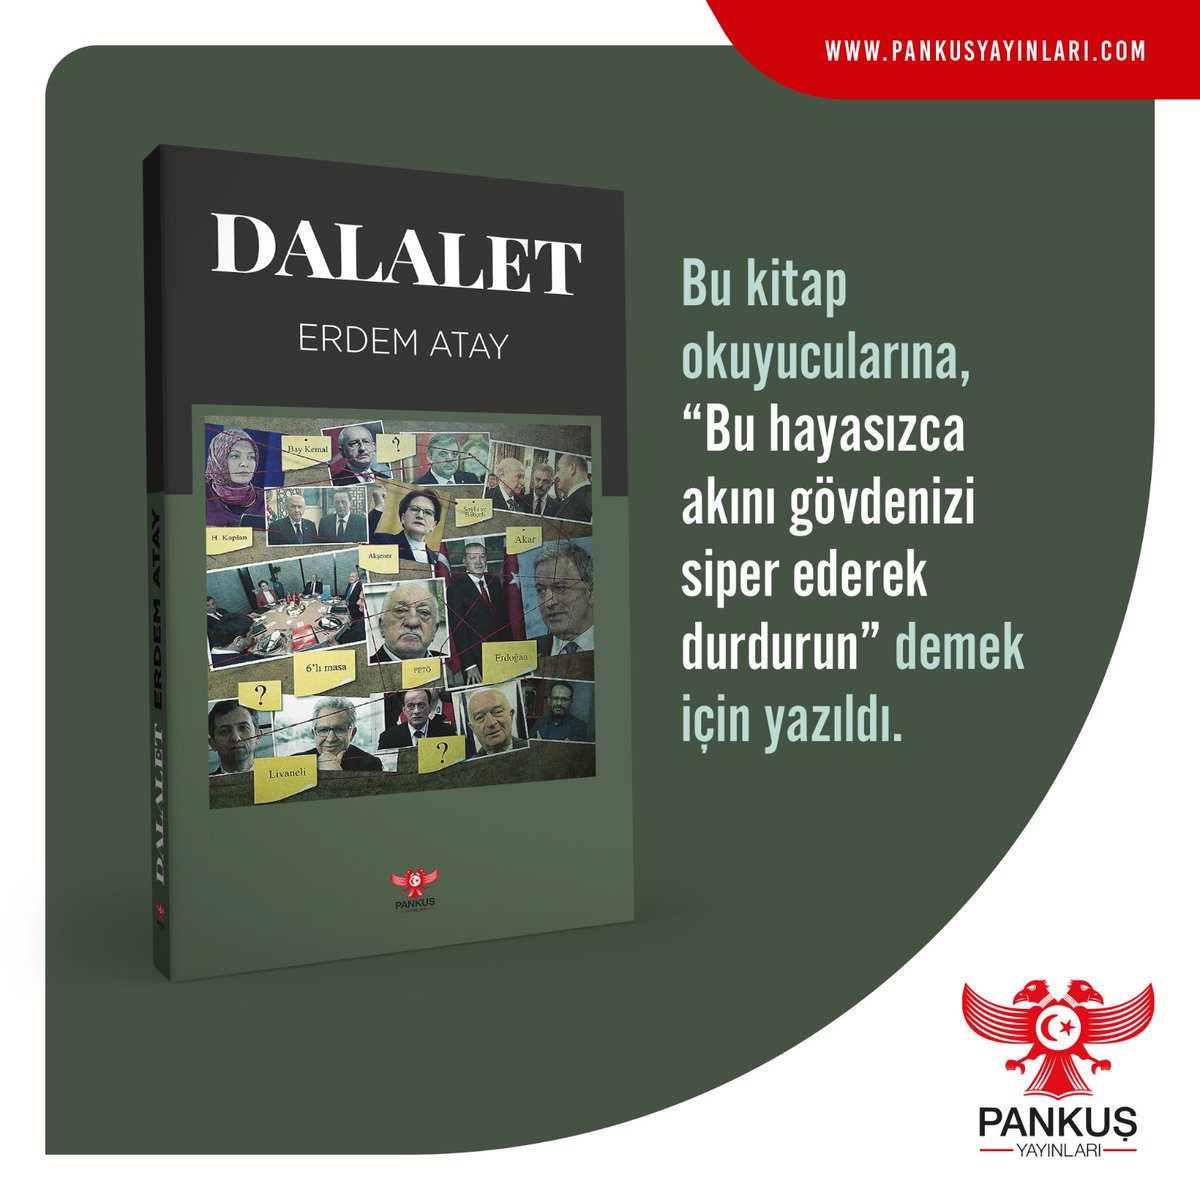 Gazeteci Erdem Atay’ın ikinci kitabı çıkıyor. Atay, ’Gaflet’ kitabının ardından ‘Dalalet’ kitabıyla karşınızda. Bu kitap hafızası güçlü olamayan necip bir milletin unutmaması gerekenleri hatırlatmak için kaleme alındı. Pazartesi İzmir Kitap Fuarı’nda… @medreyata